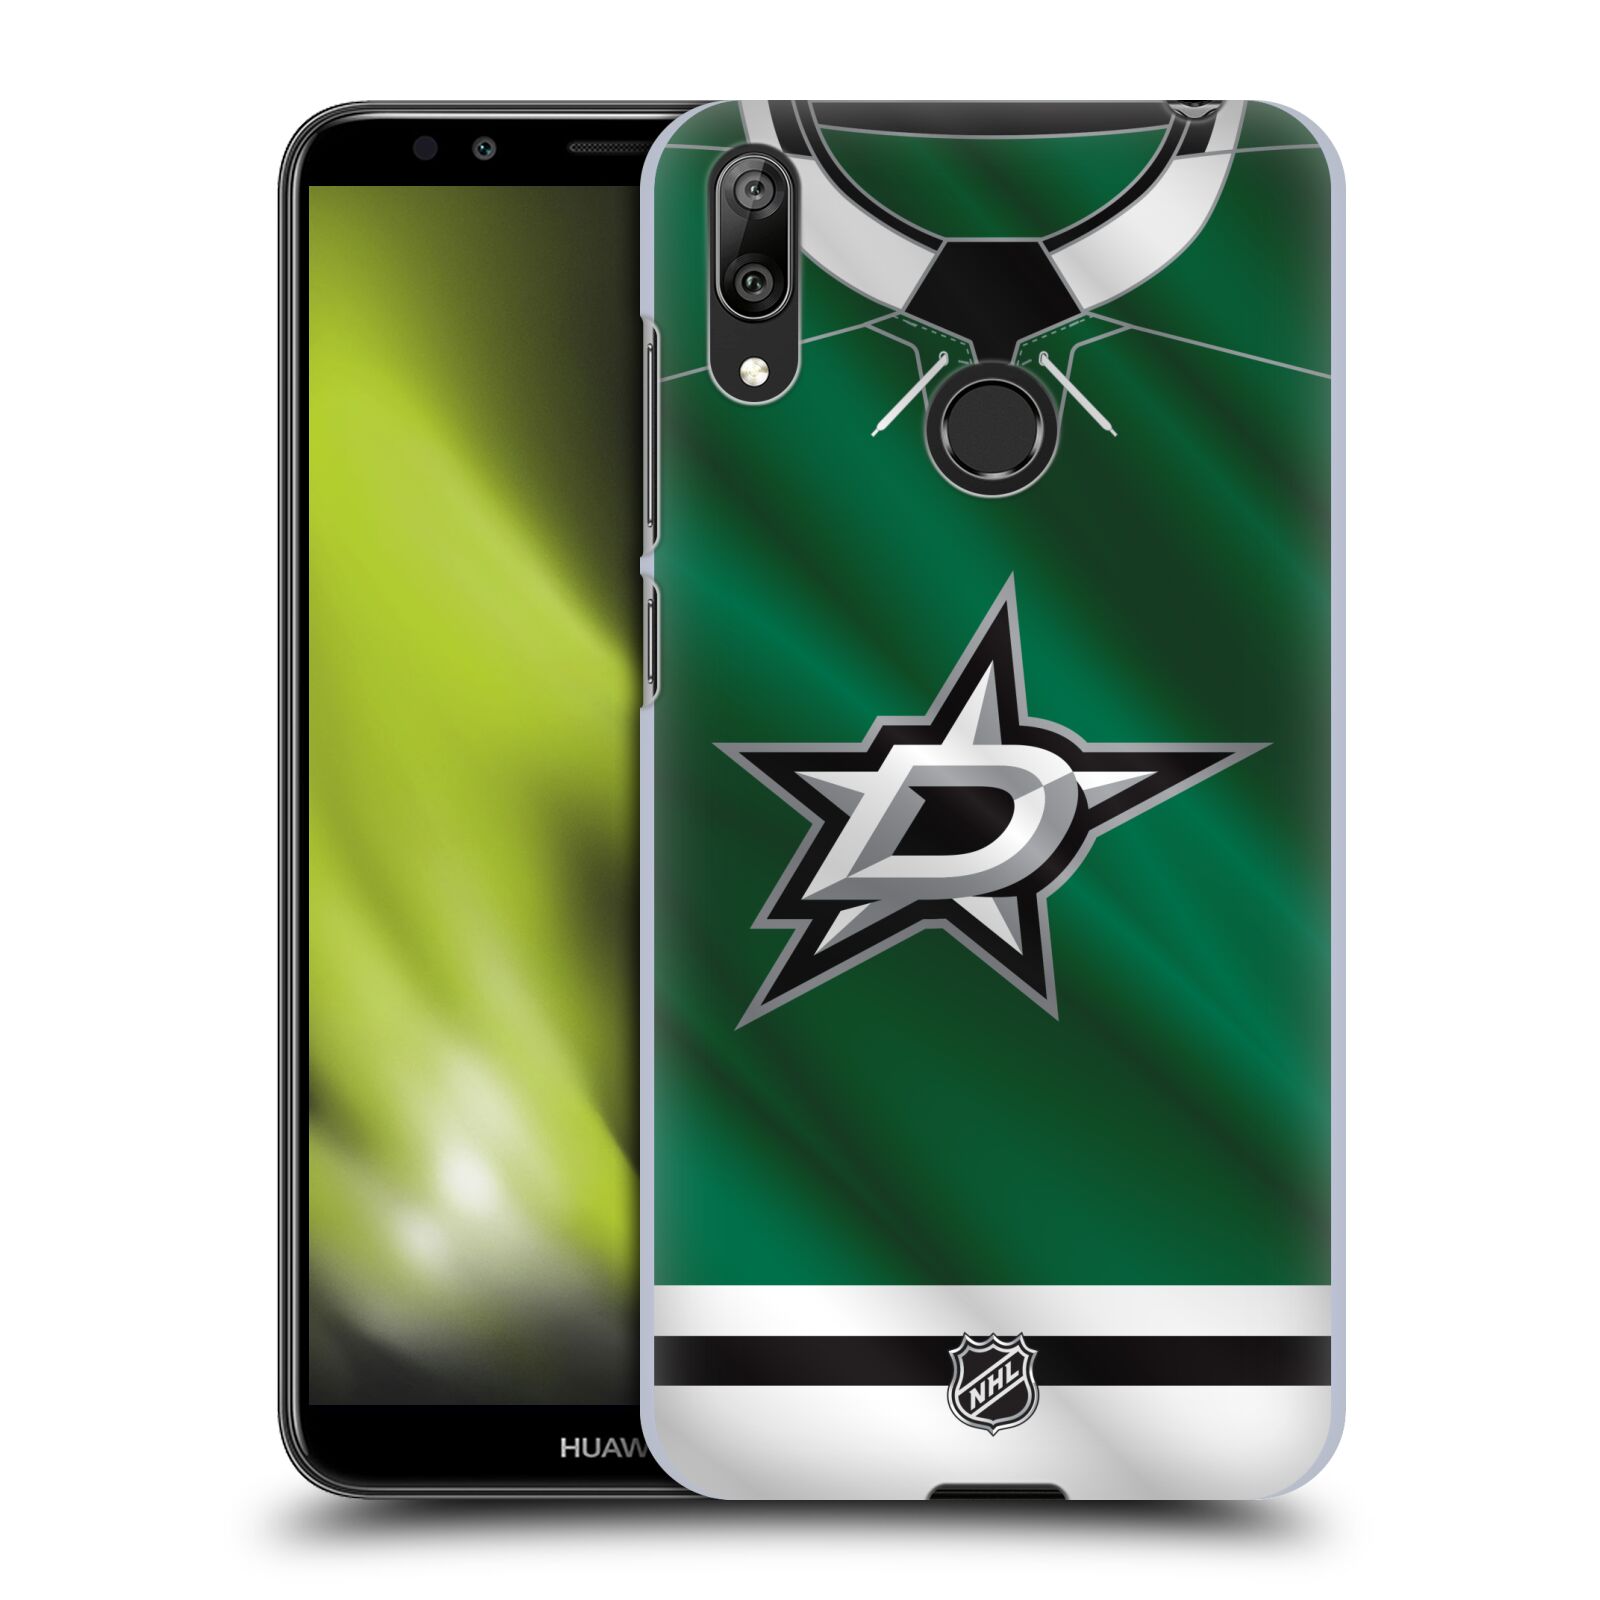 Pouzdro na mobil Huawei Y7 2019 - HEAD CASE - Hokej NHL - Dallas Stars - Dres